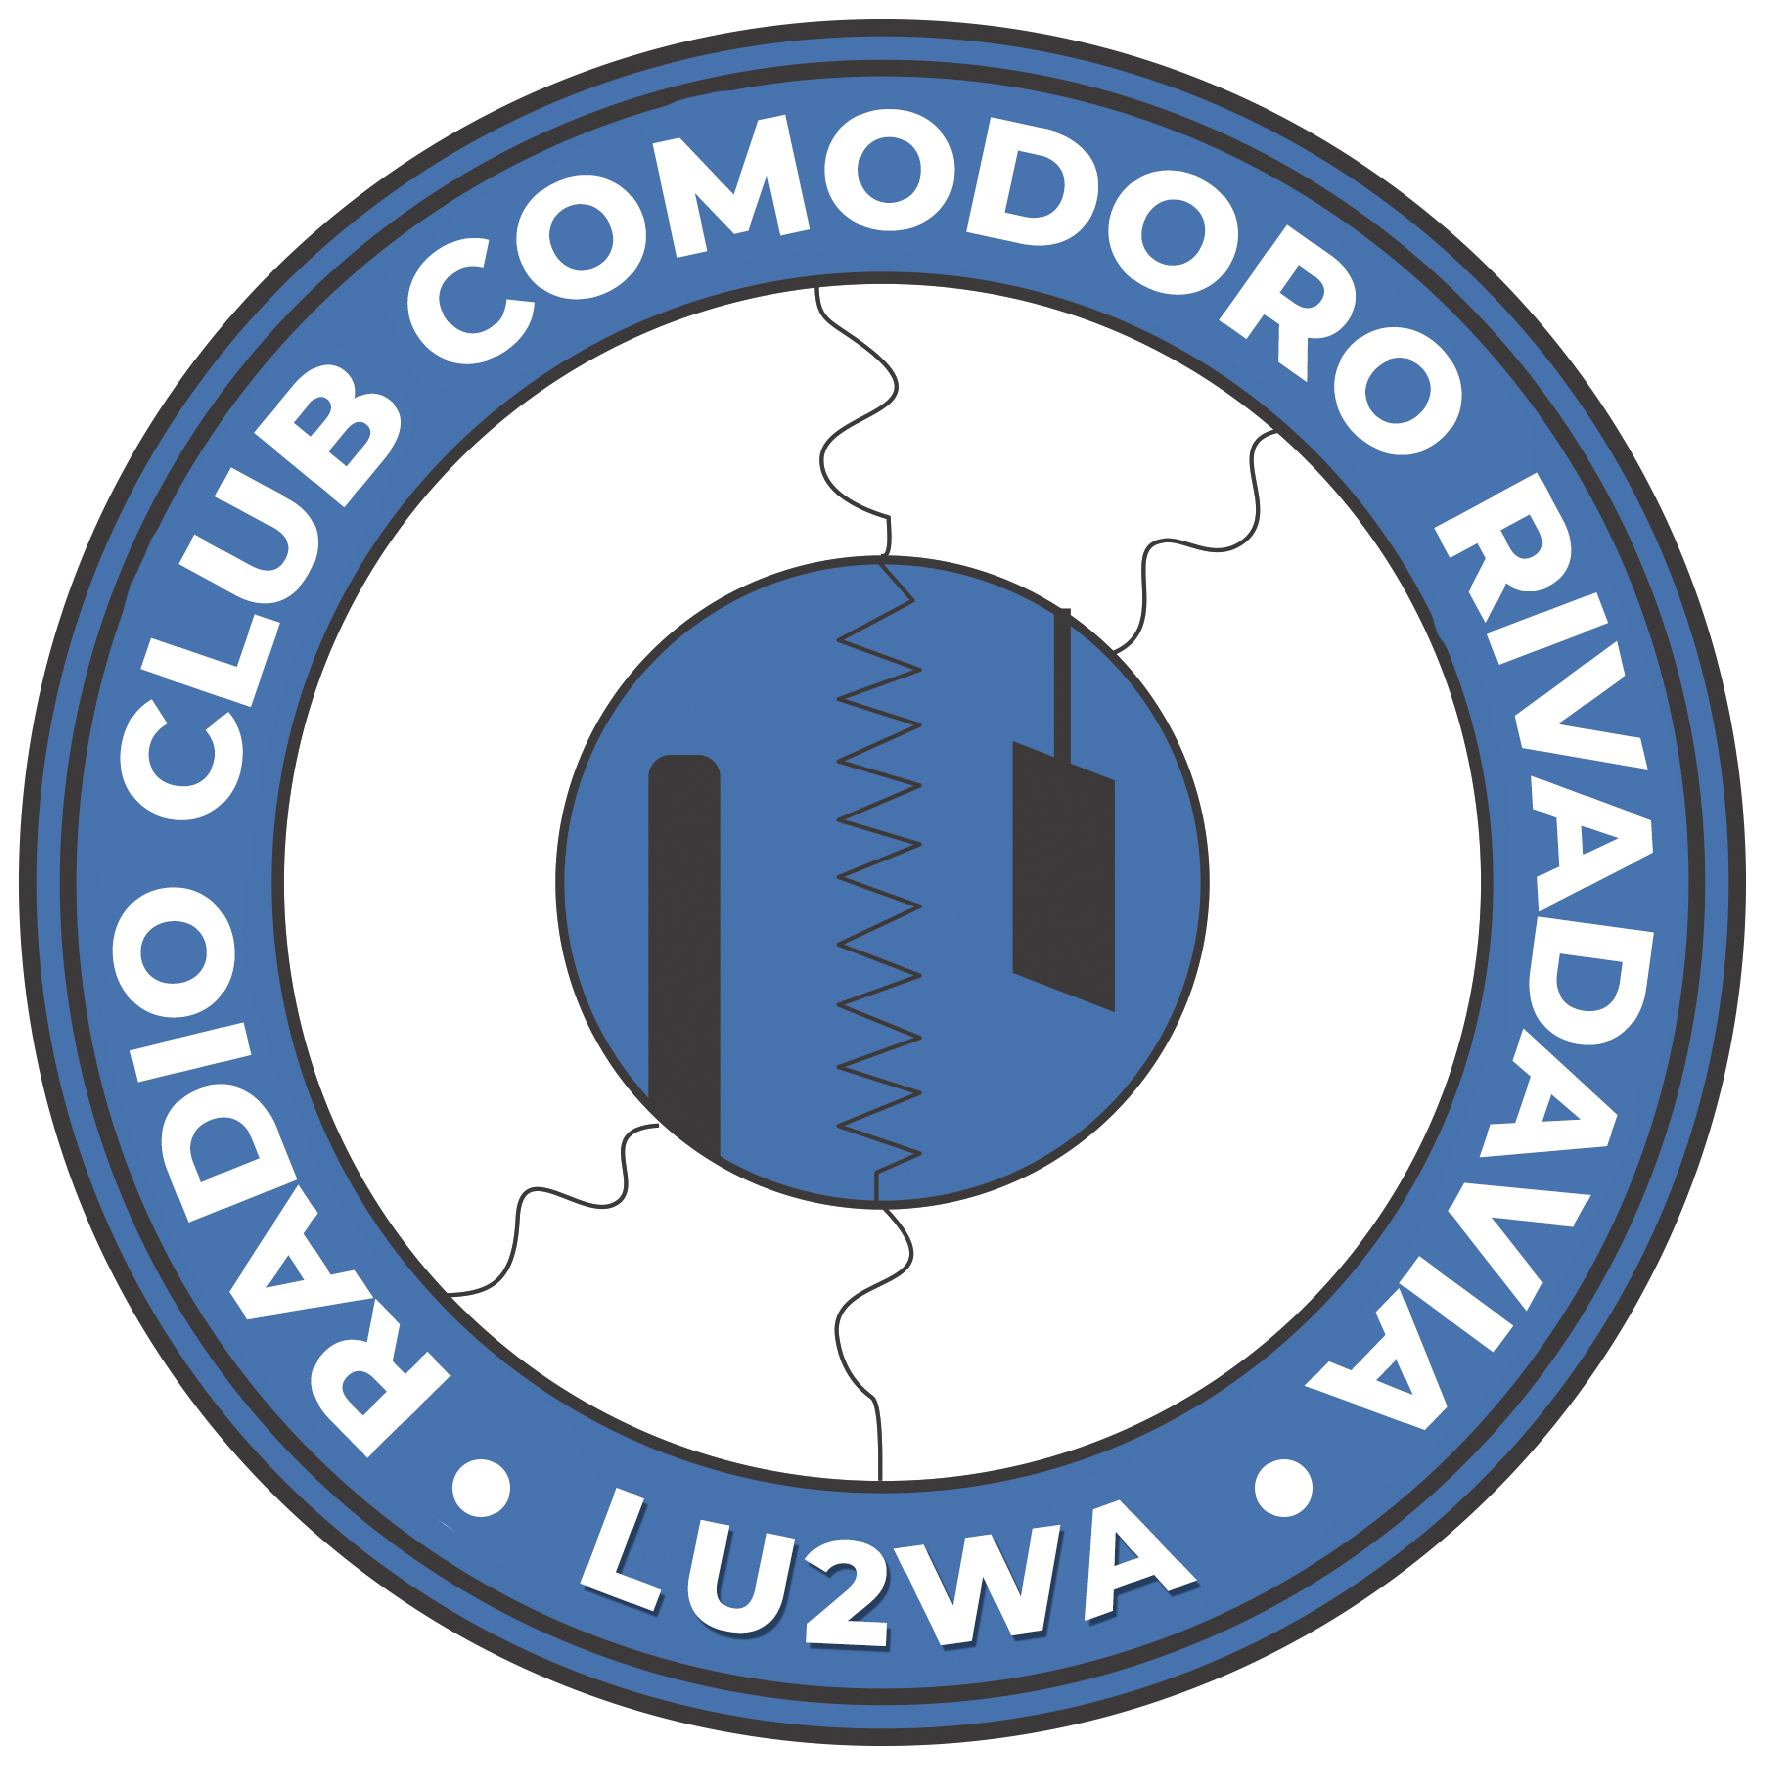 (LU2WA) Radio Club Comodoro Rivadavia"